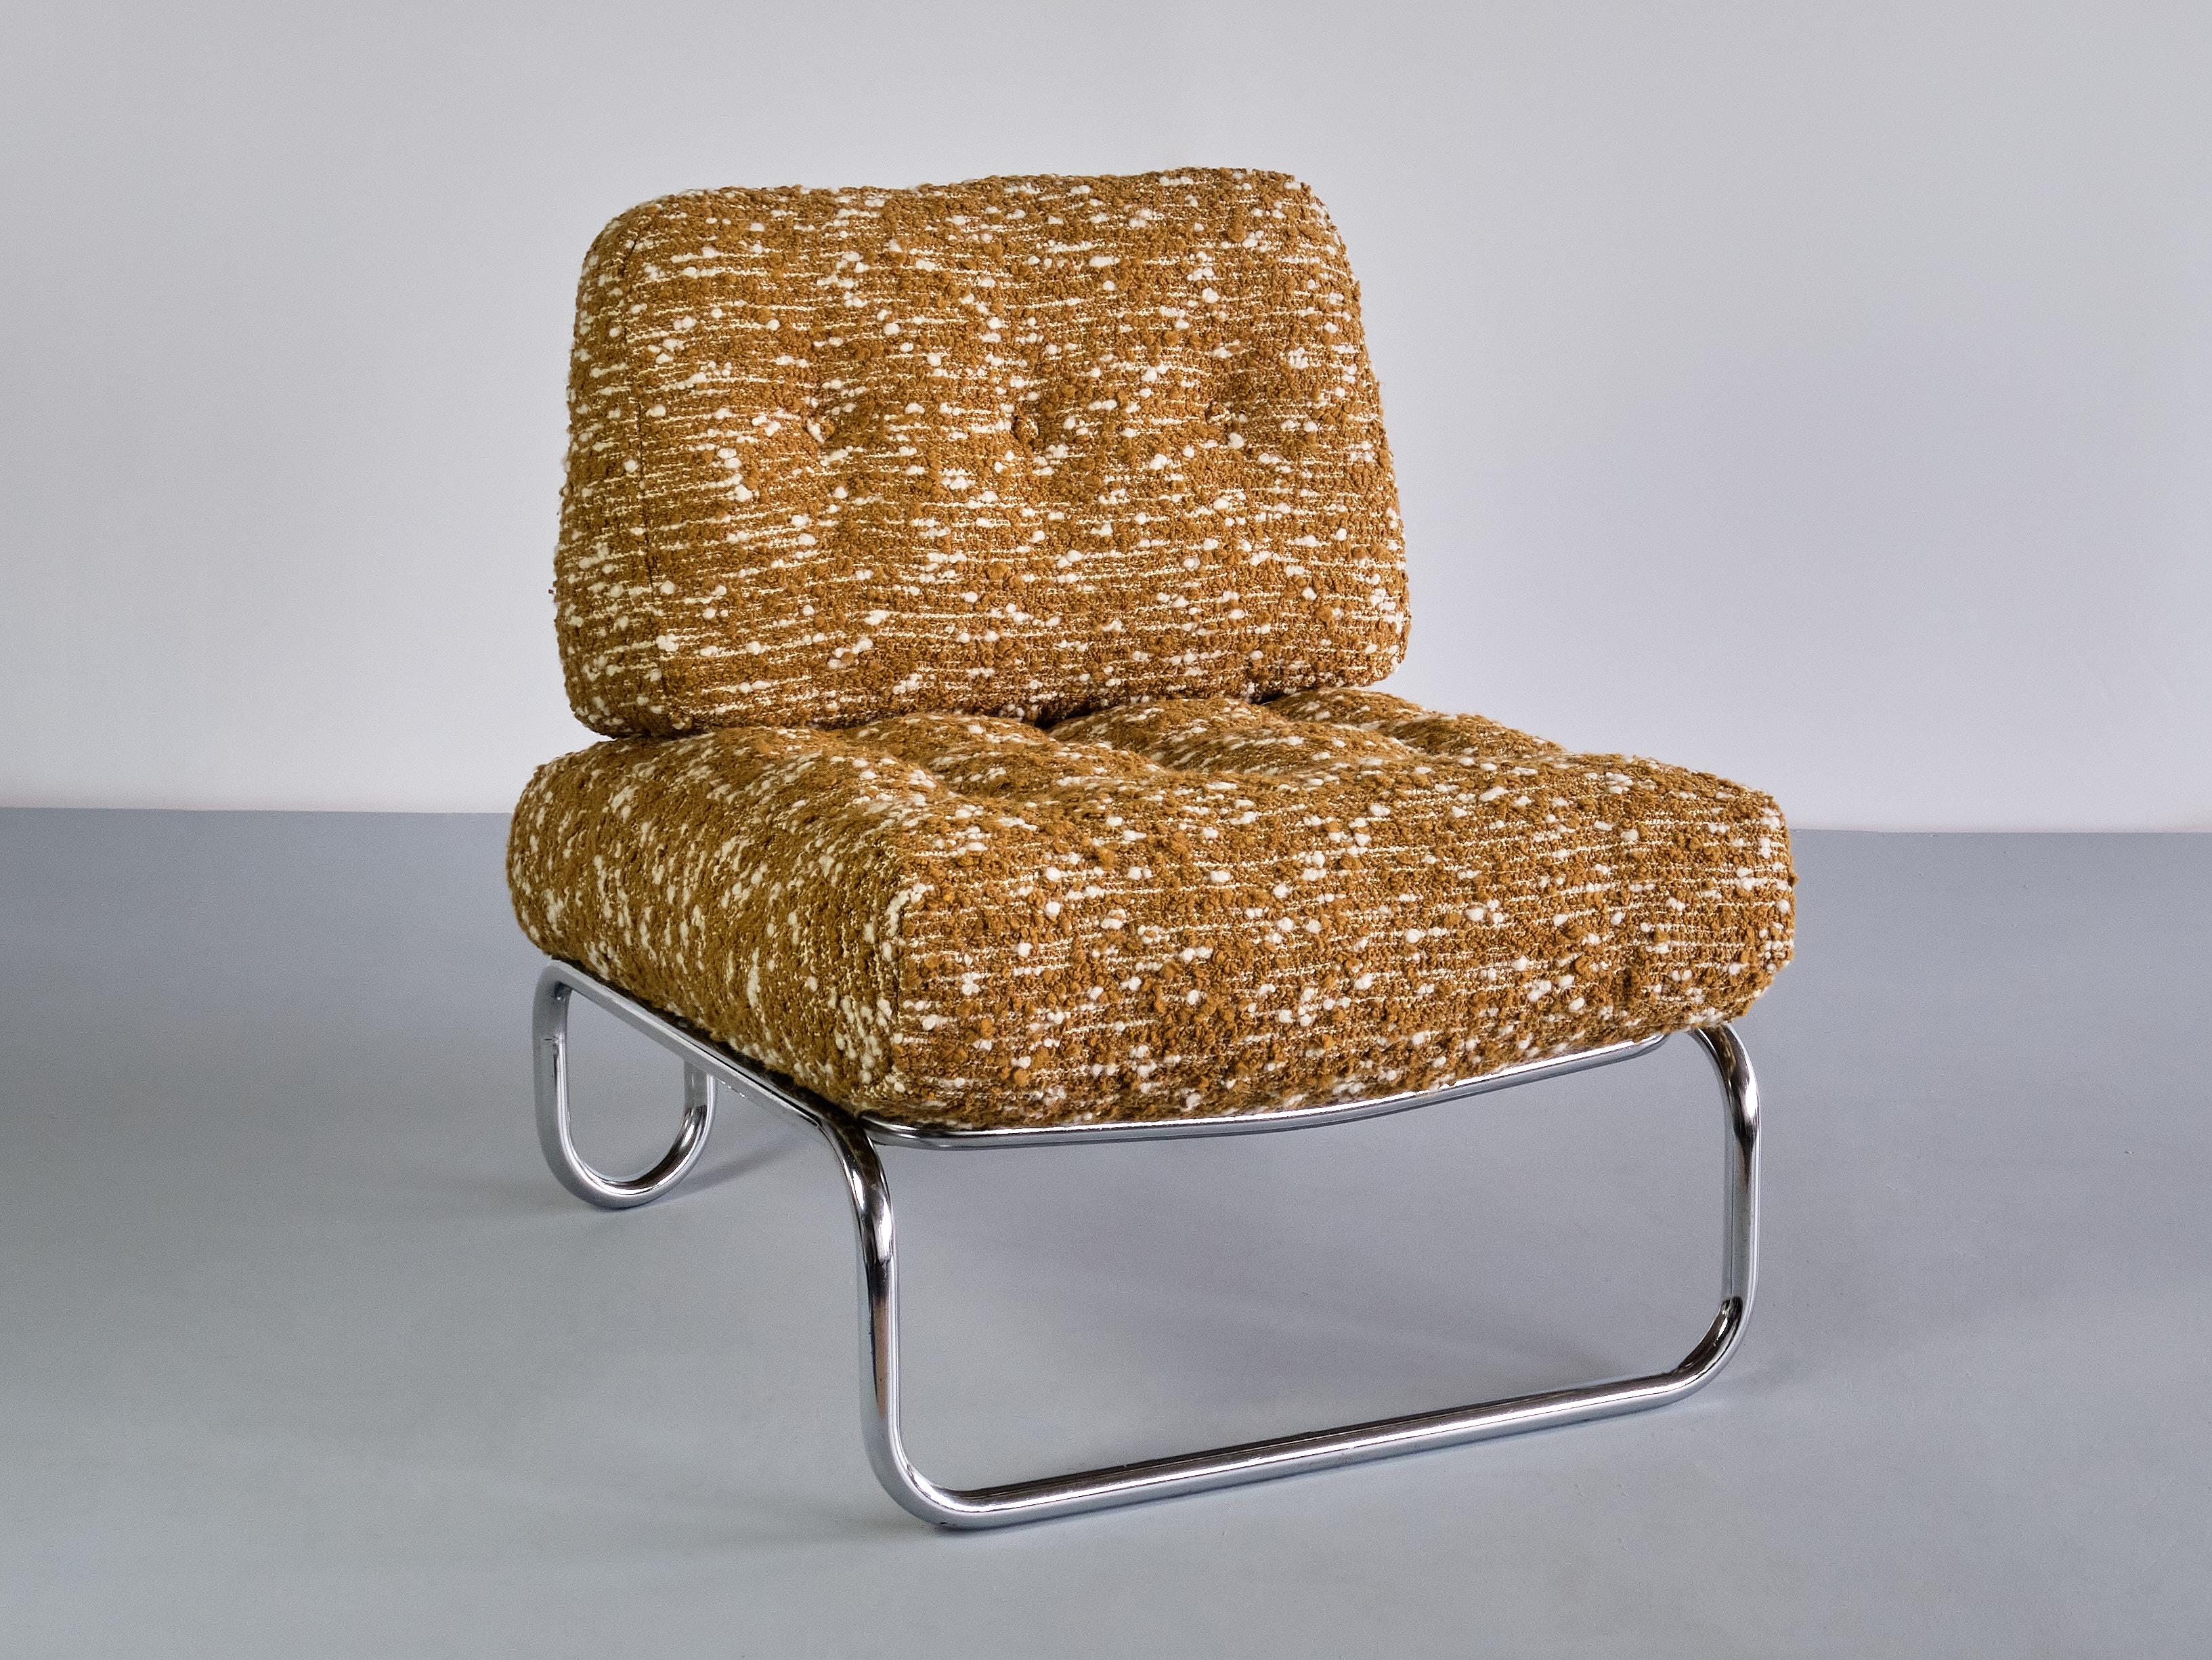 Cette chaise longue remarquable a été produite en Allemagne dans les années 1970. Le cadre tubulaire est en acier chromé. Les belles lignes courbes des pieds et du cadre font référence au style Bauhaus. La ligne continue du dossier et des pieds du